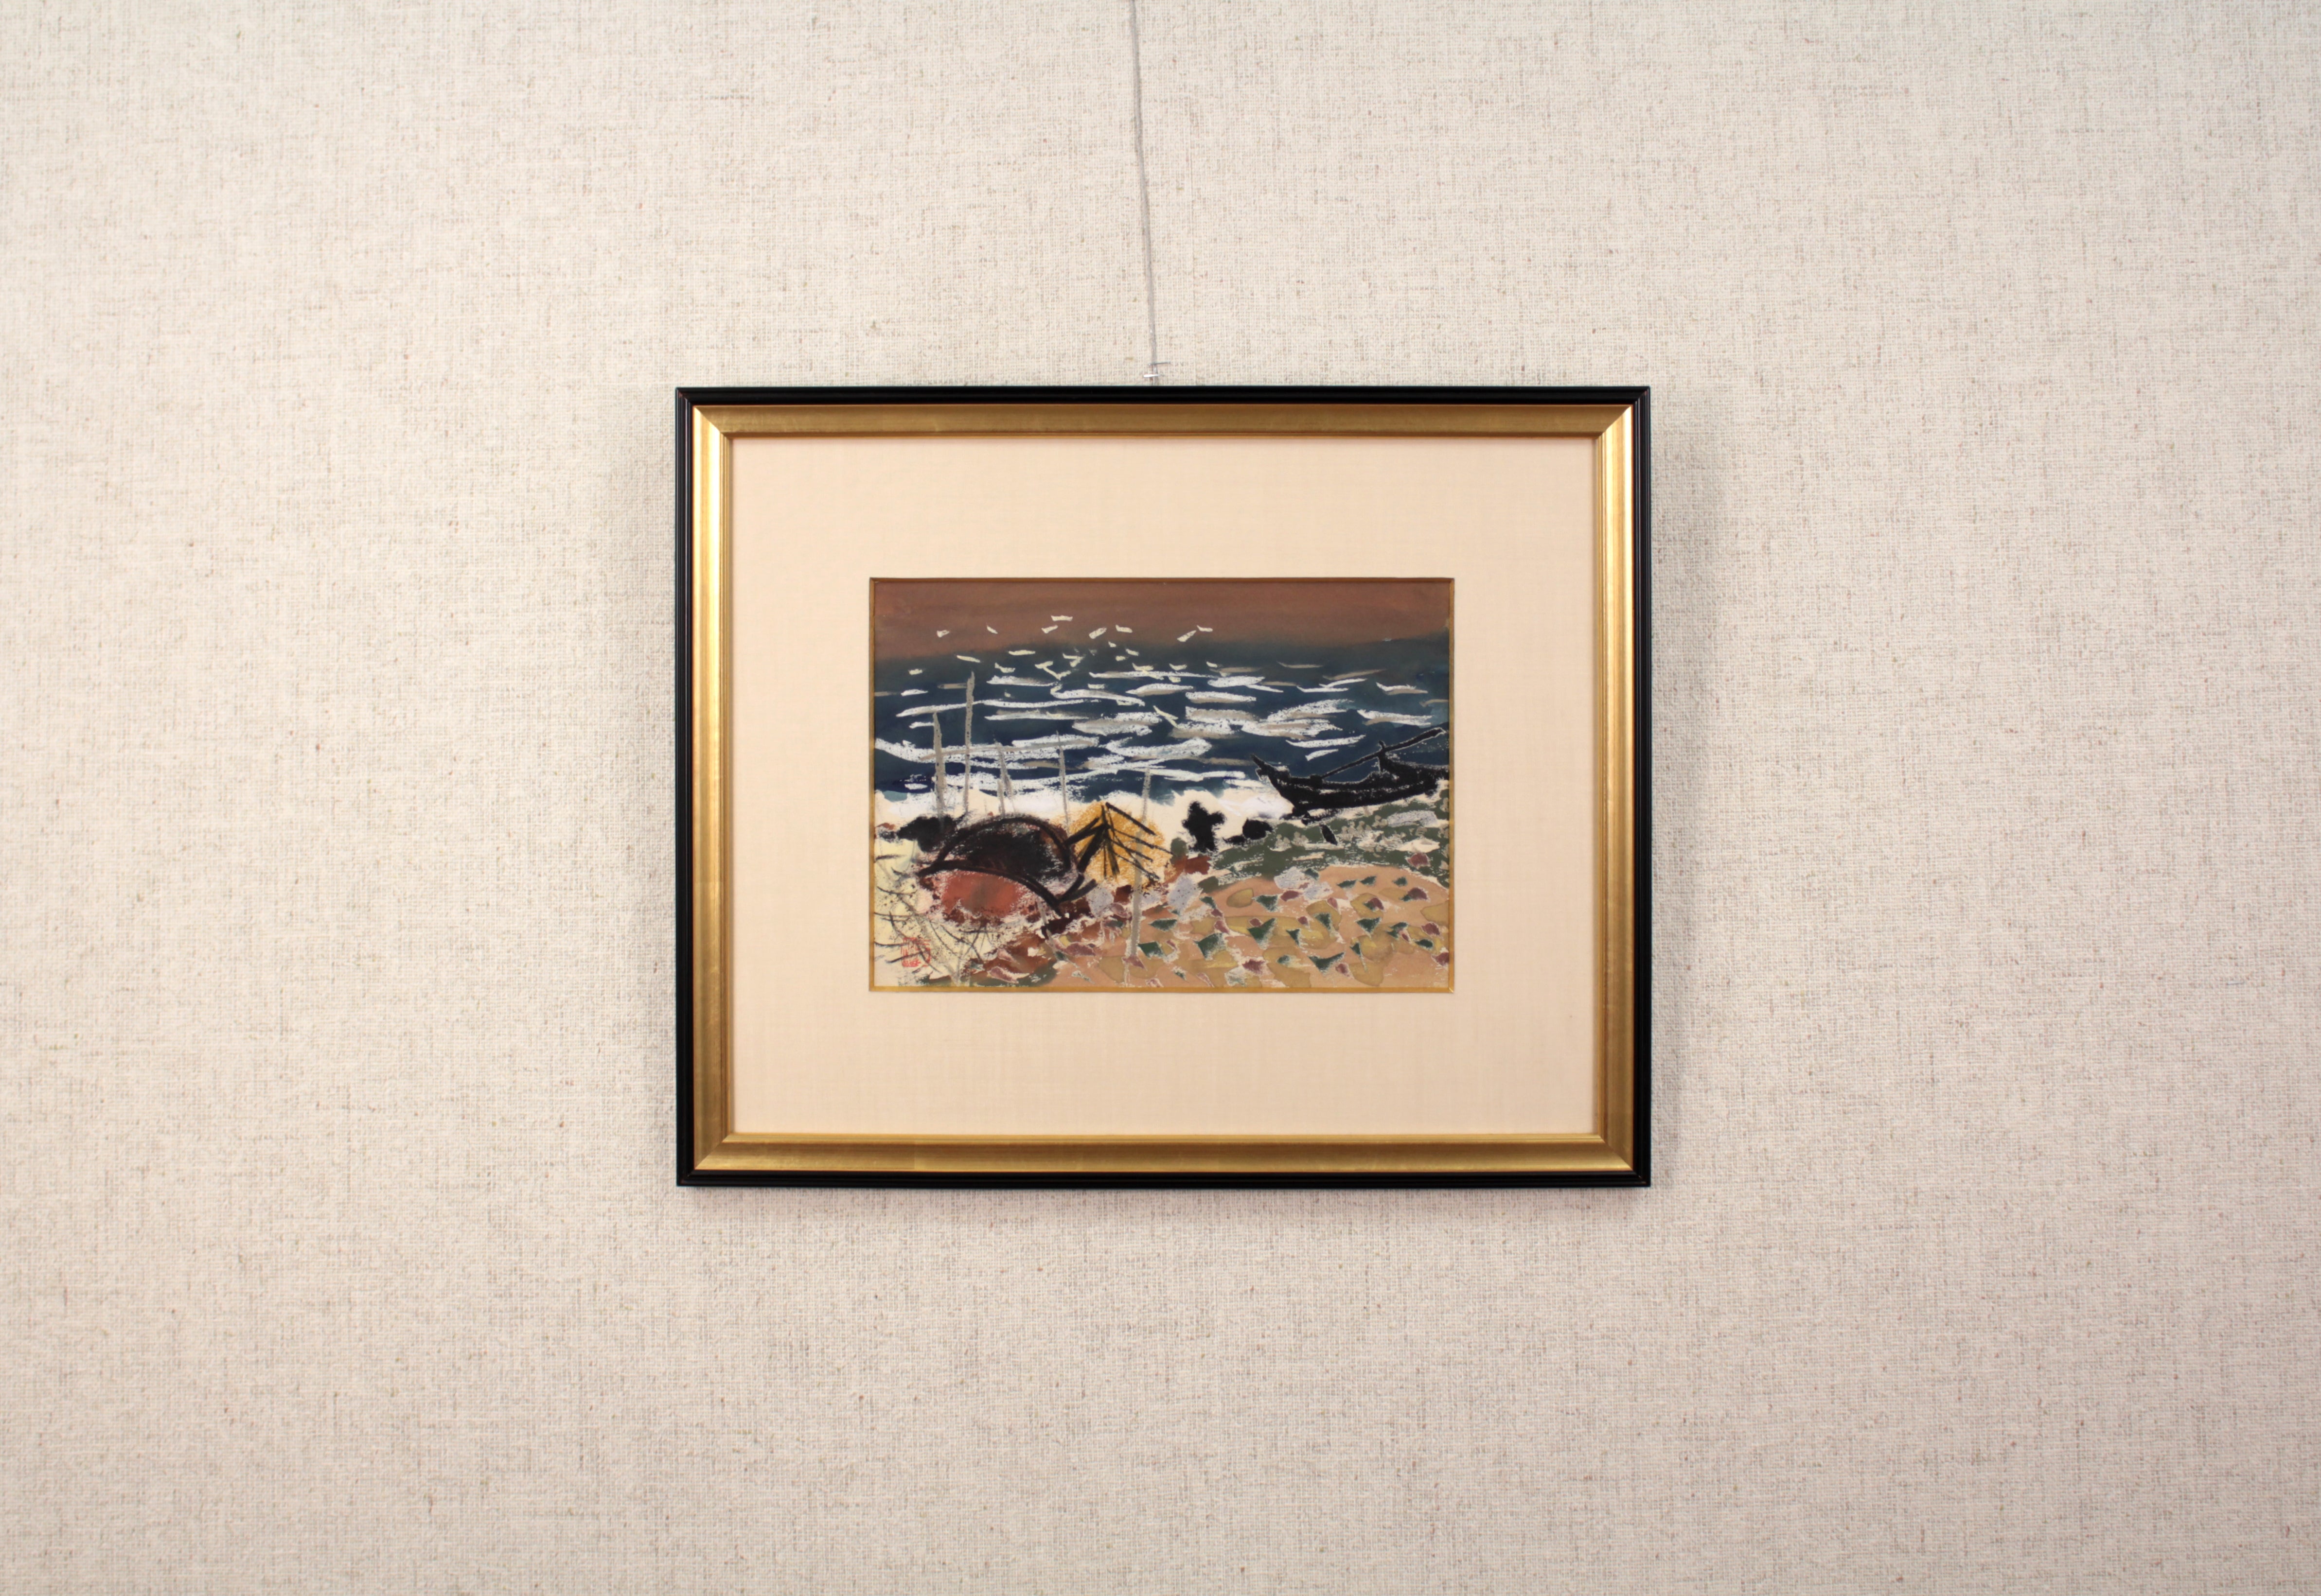 伊藤 廉『二羽の鳥』パステル画 絵画 - 北海道画廊 - 美術品